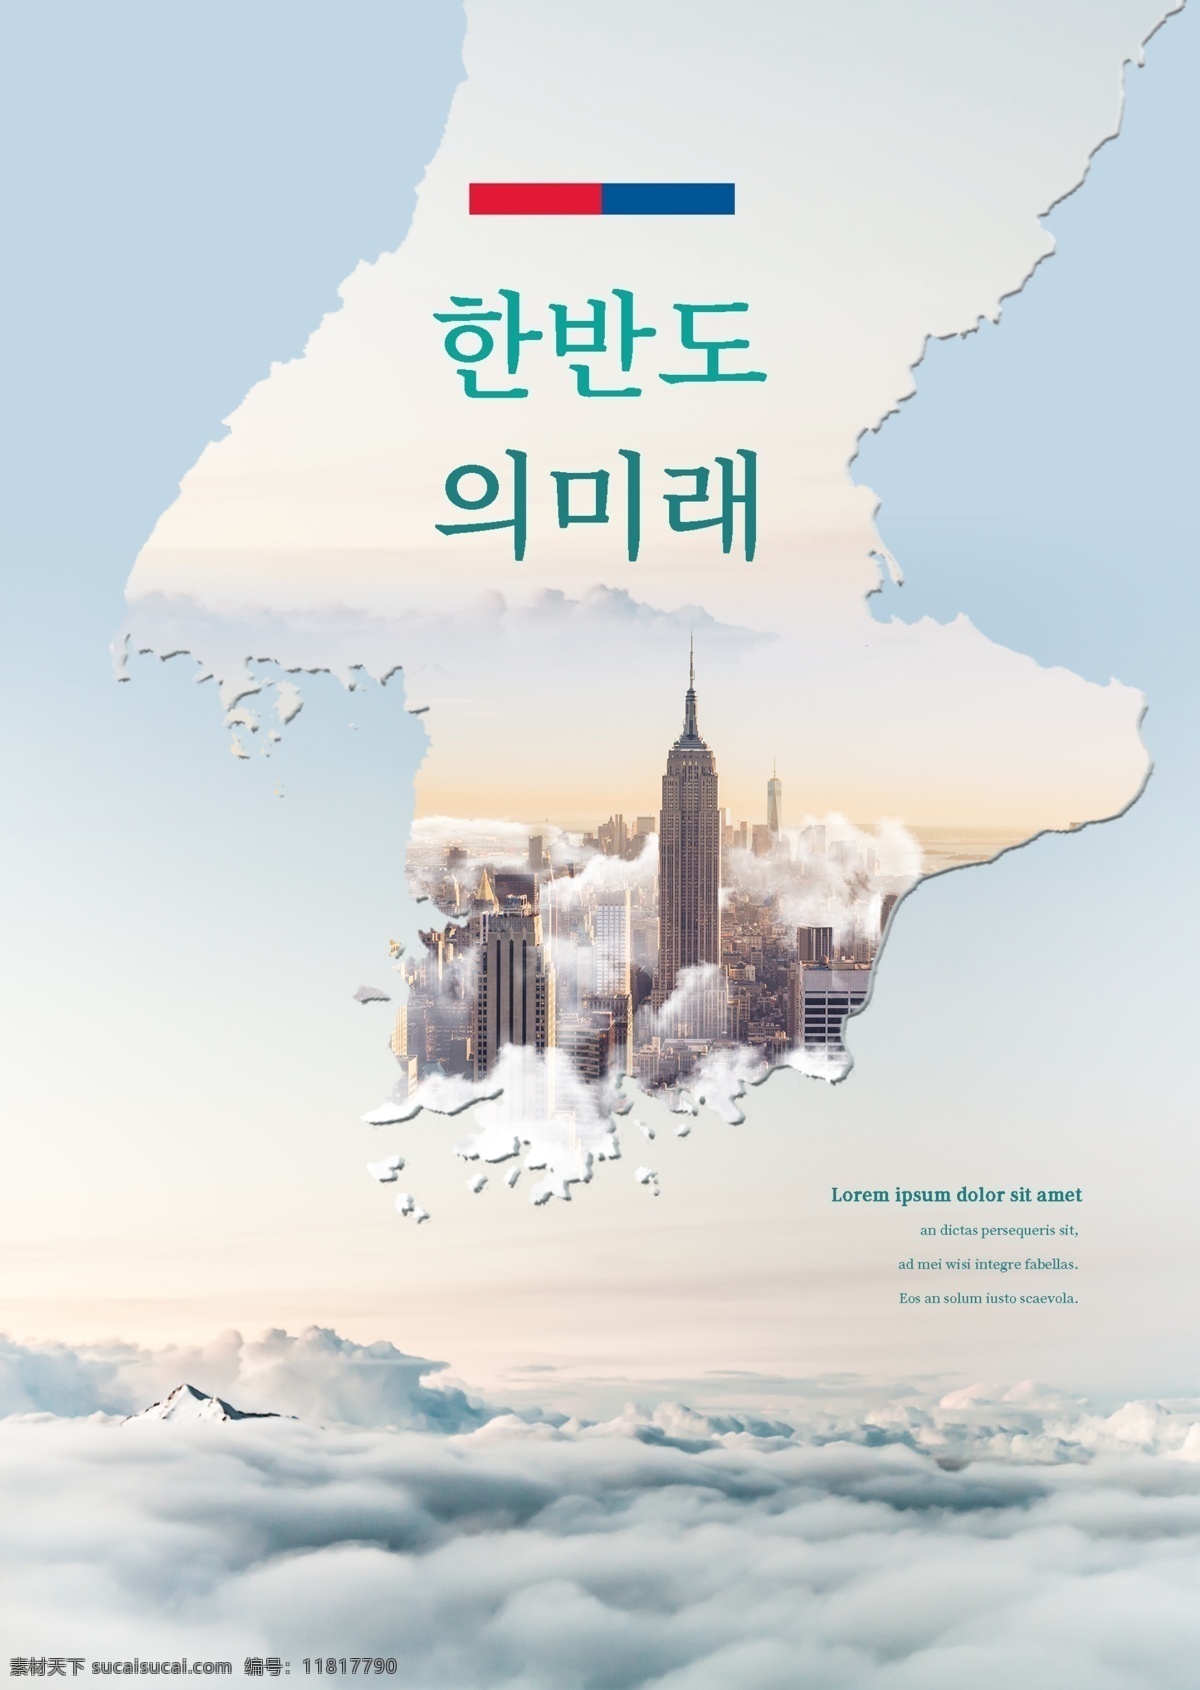 韩国 国家 领导 城市建设 育苗 技术 肝脏药物 建造 高层建筑 广告的未来 市 城市的发展 安全建设 朝鲜半岛 未来 城市 建筑 到来 国家发展计划